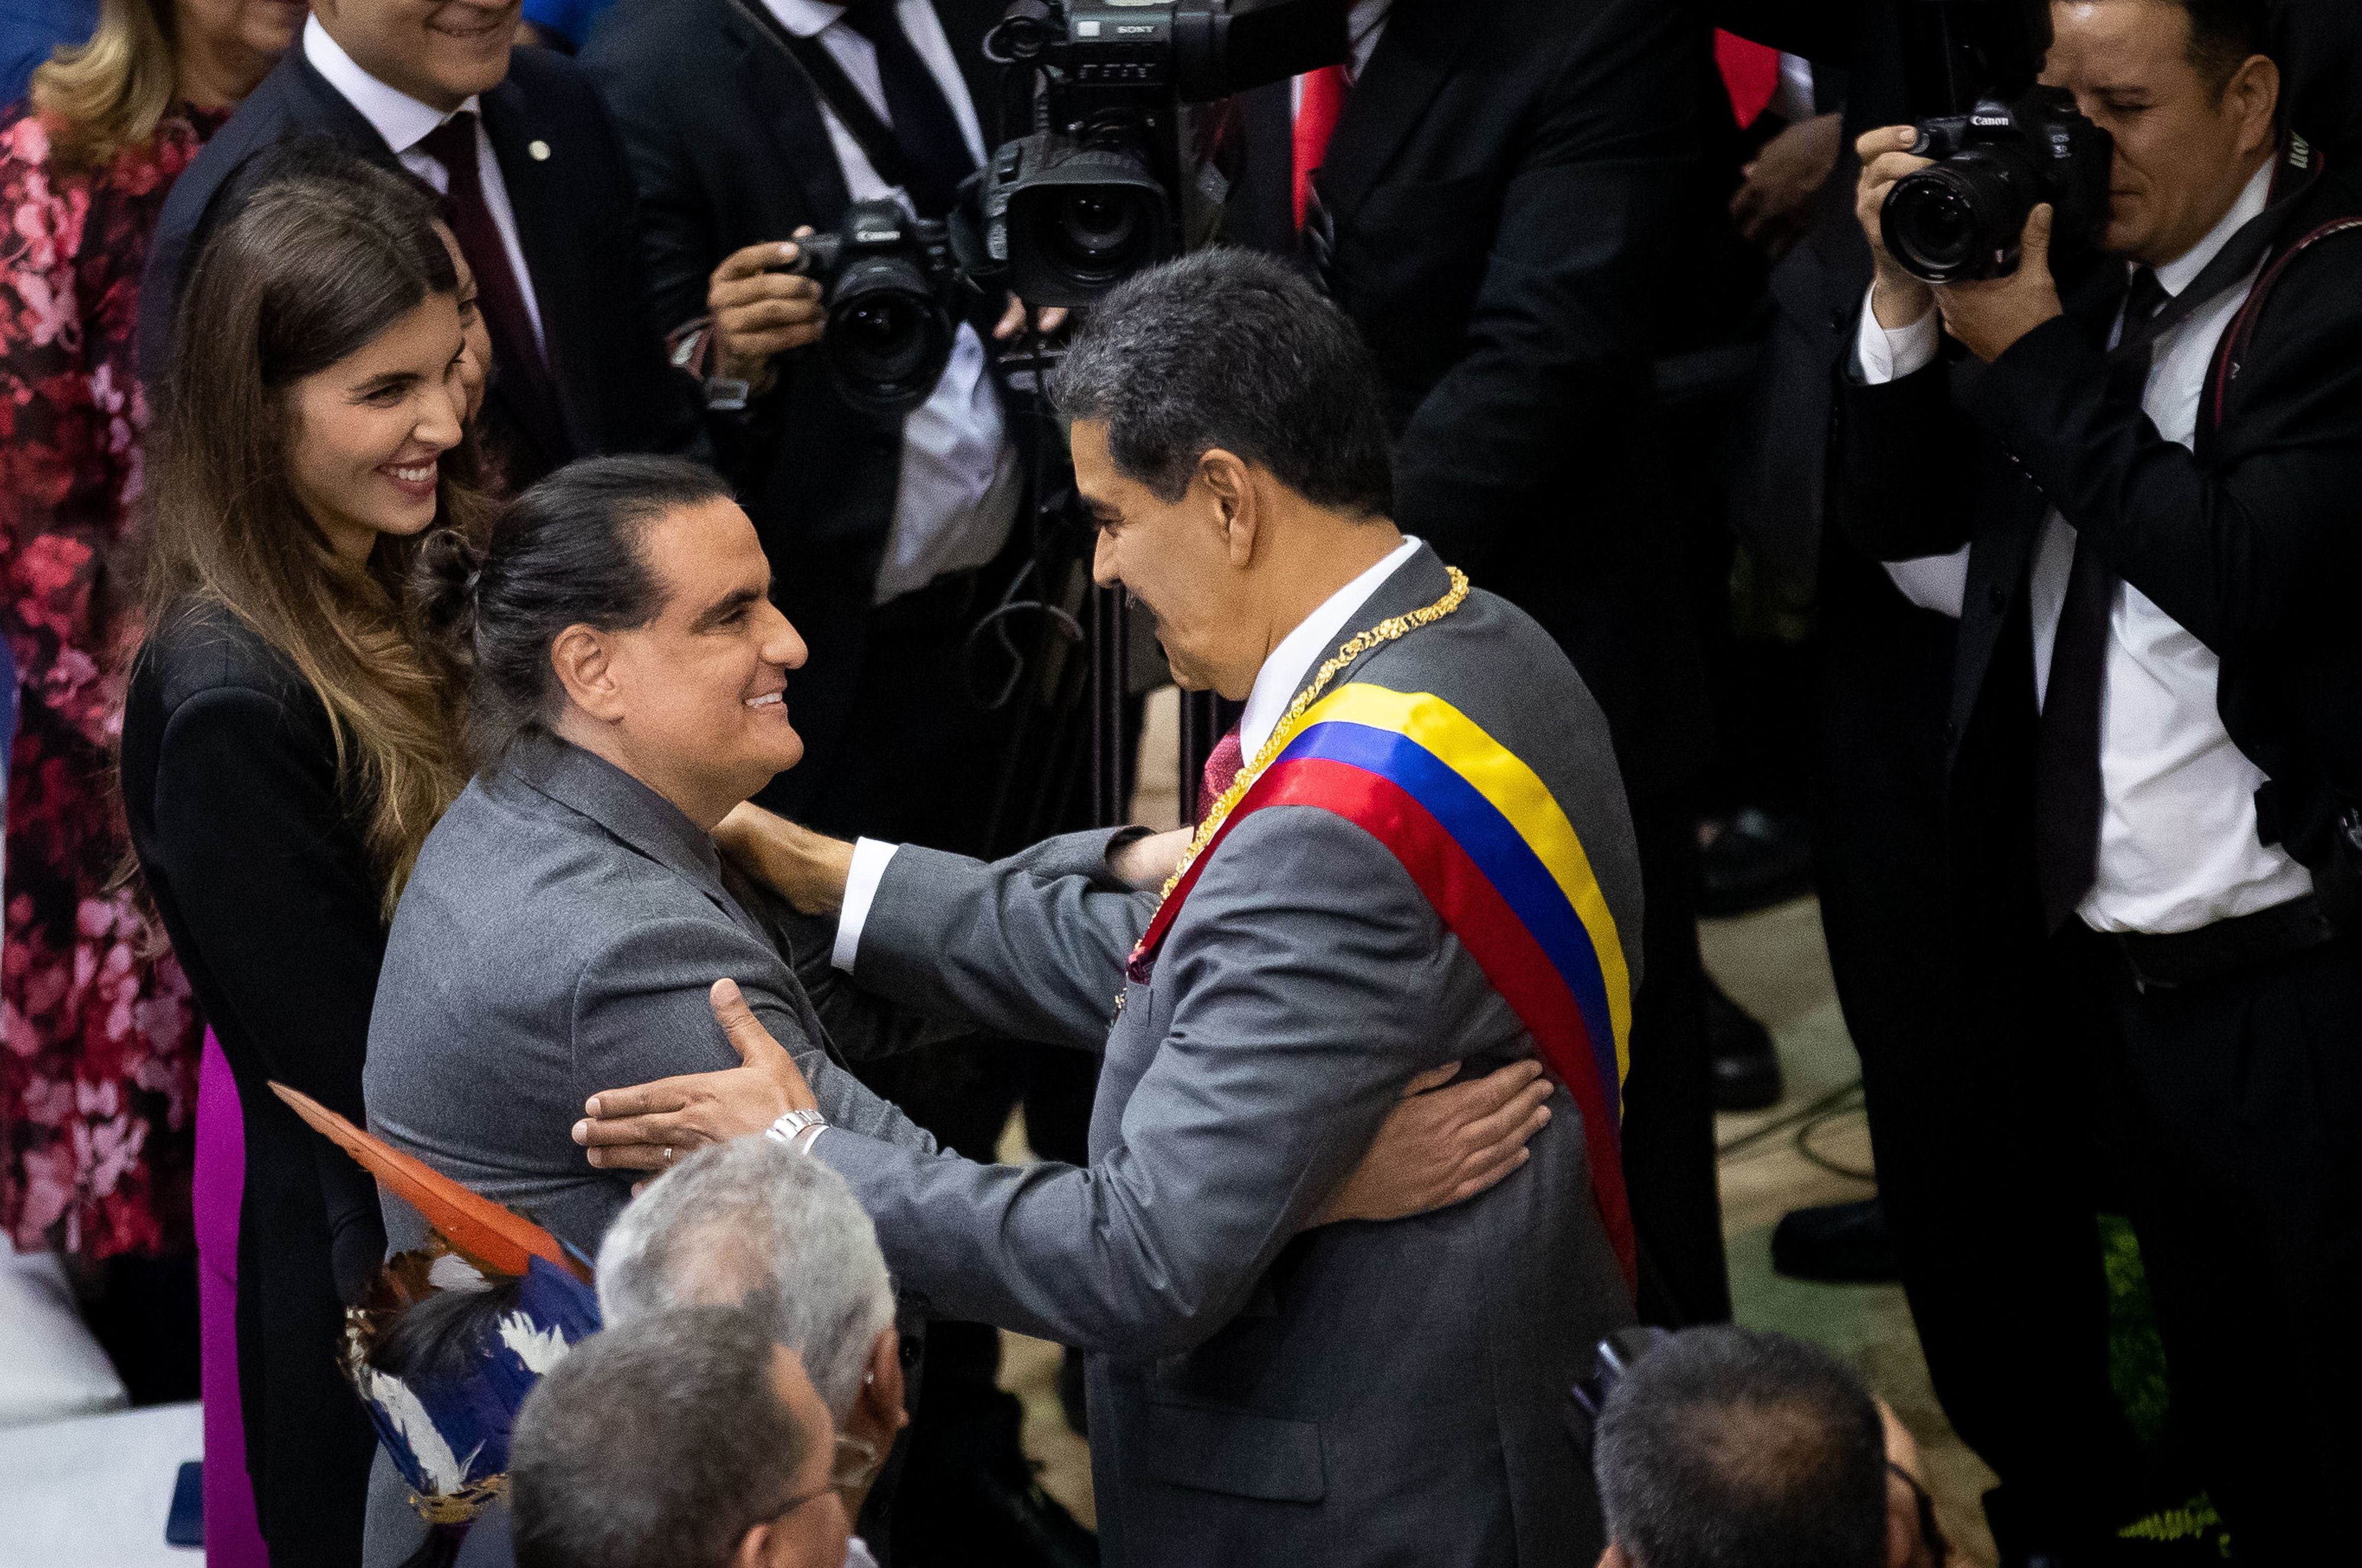 El dictador venezolano, Nicolás Maduro (c), saluda al testaferro colombiano Alex Saab (i), liberado recientemente por EE.UU. en un acuerdo con el régimen venezolano, antes de presentar su rendición de cuentas ante la Asamblea Nacional (AN, Parlamento), de contundente mayoría oficialista, hoy, en Caracas (Venezuela). EFE/Rayner Peña R. 